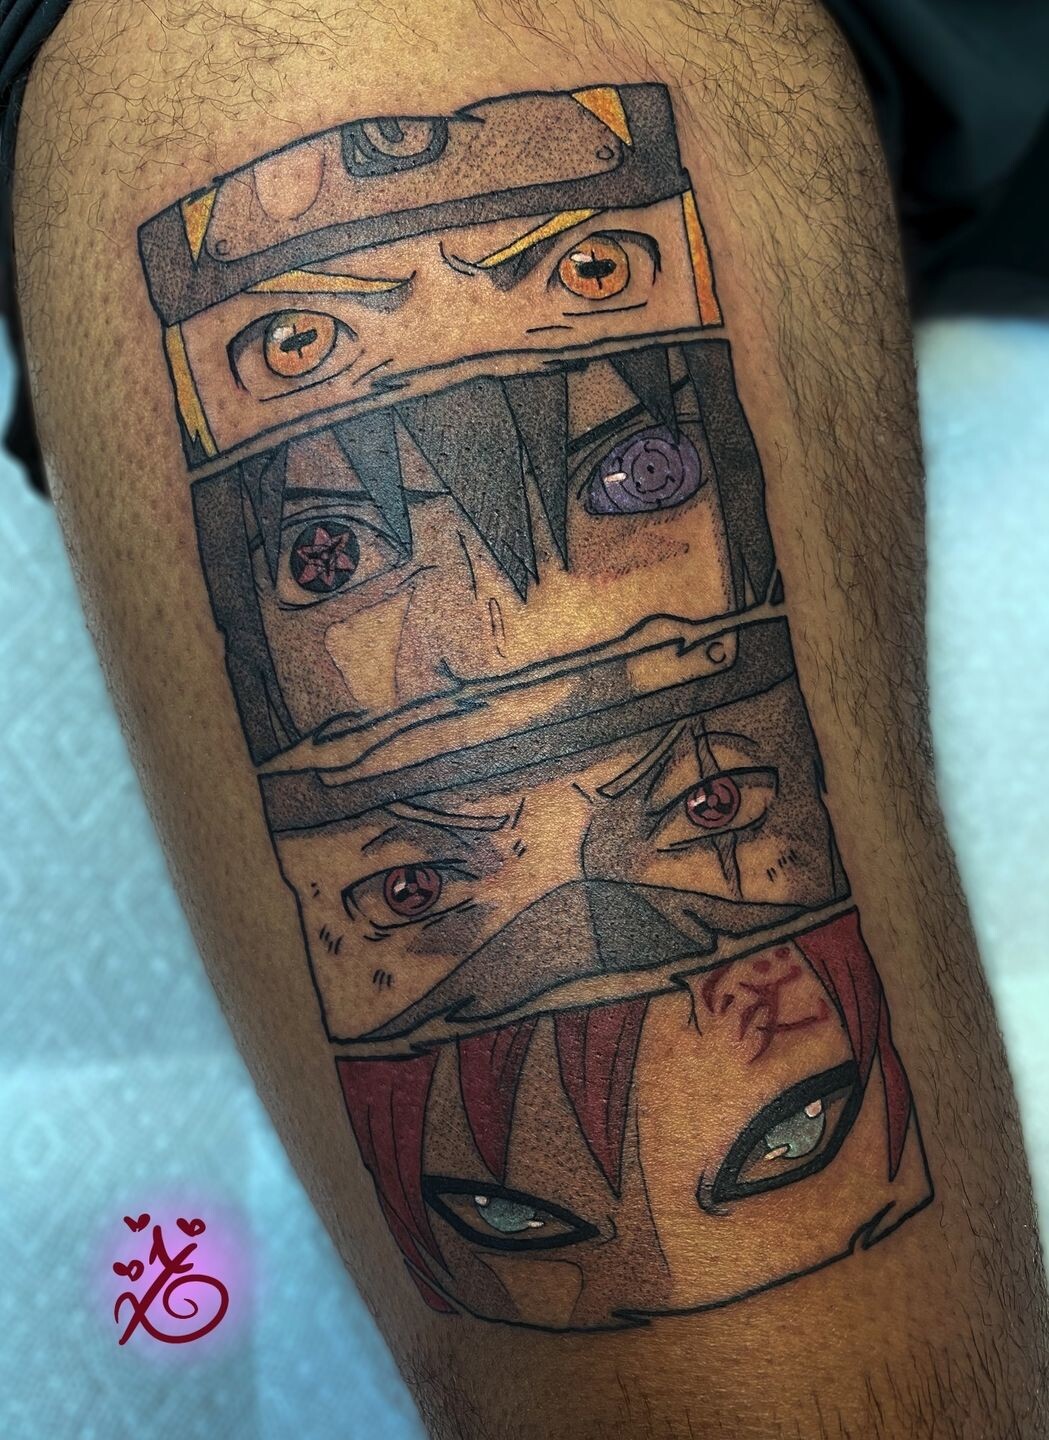 ArtStation - Naruto eyes